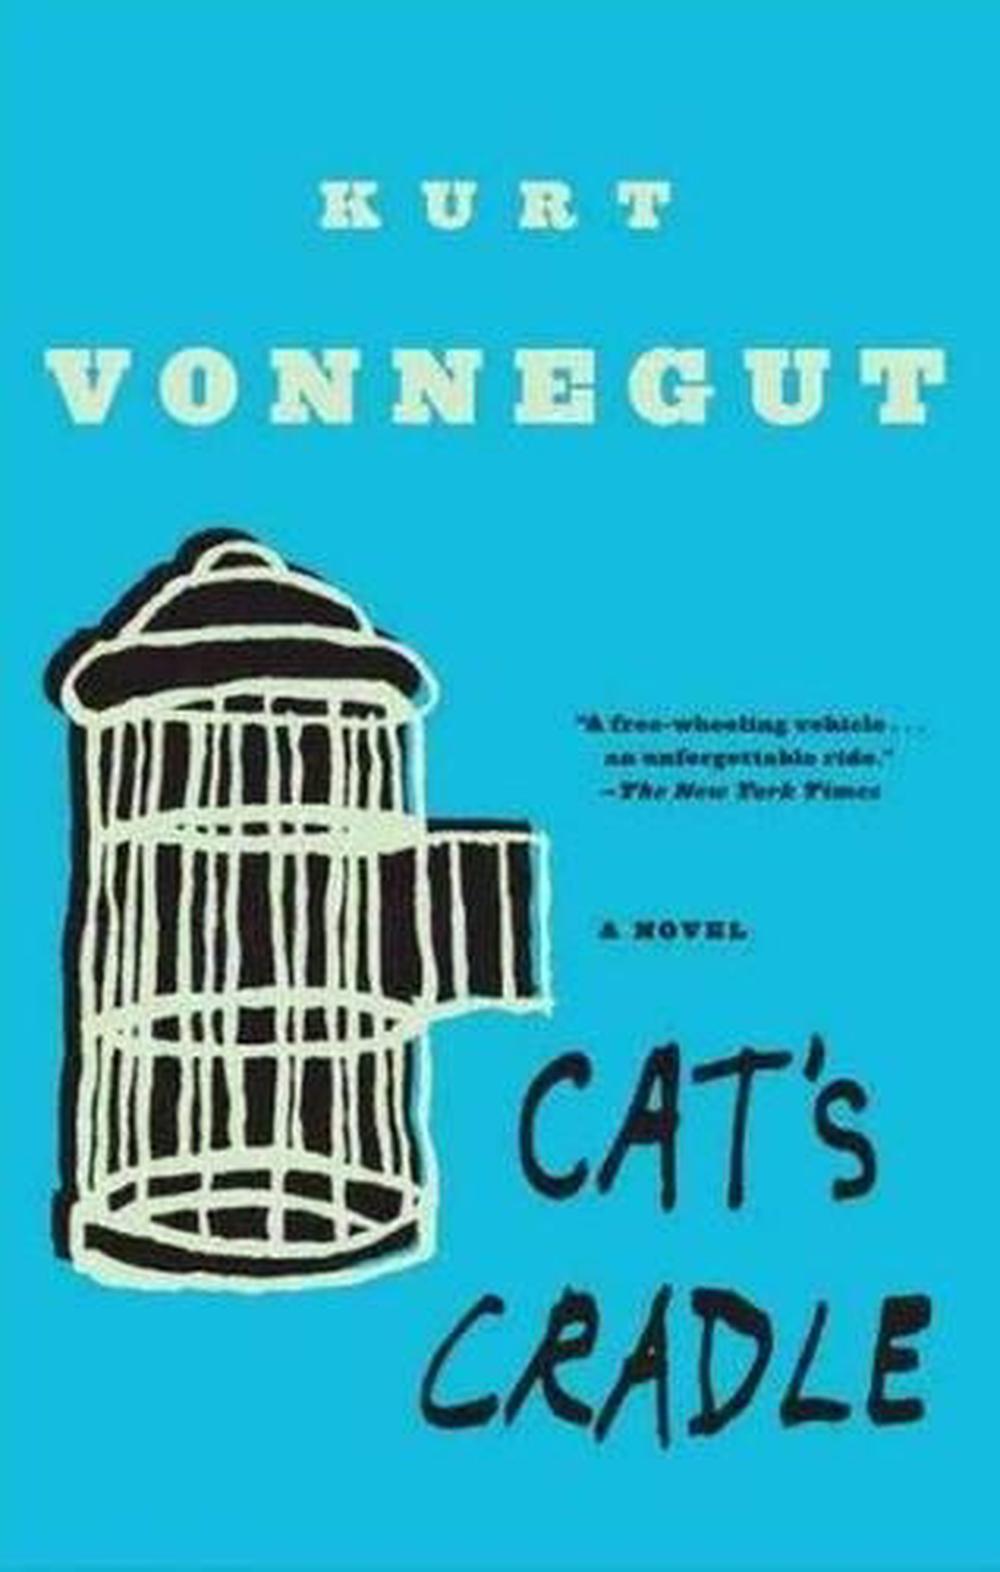 Cat's Cradle Cat's Cradle Low Price CD by Kurt Jr. Vonnegut (English